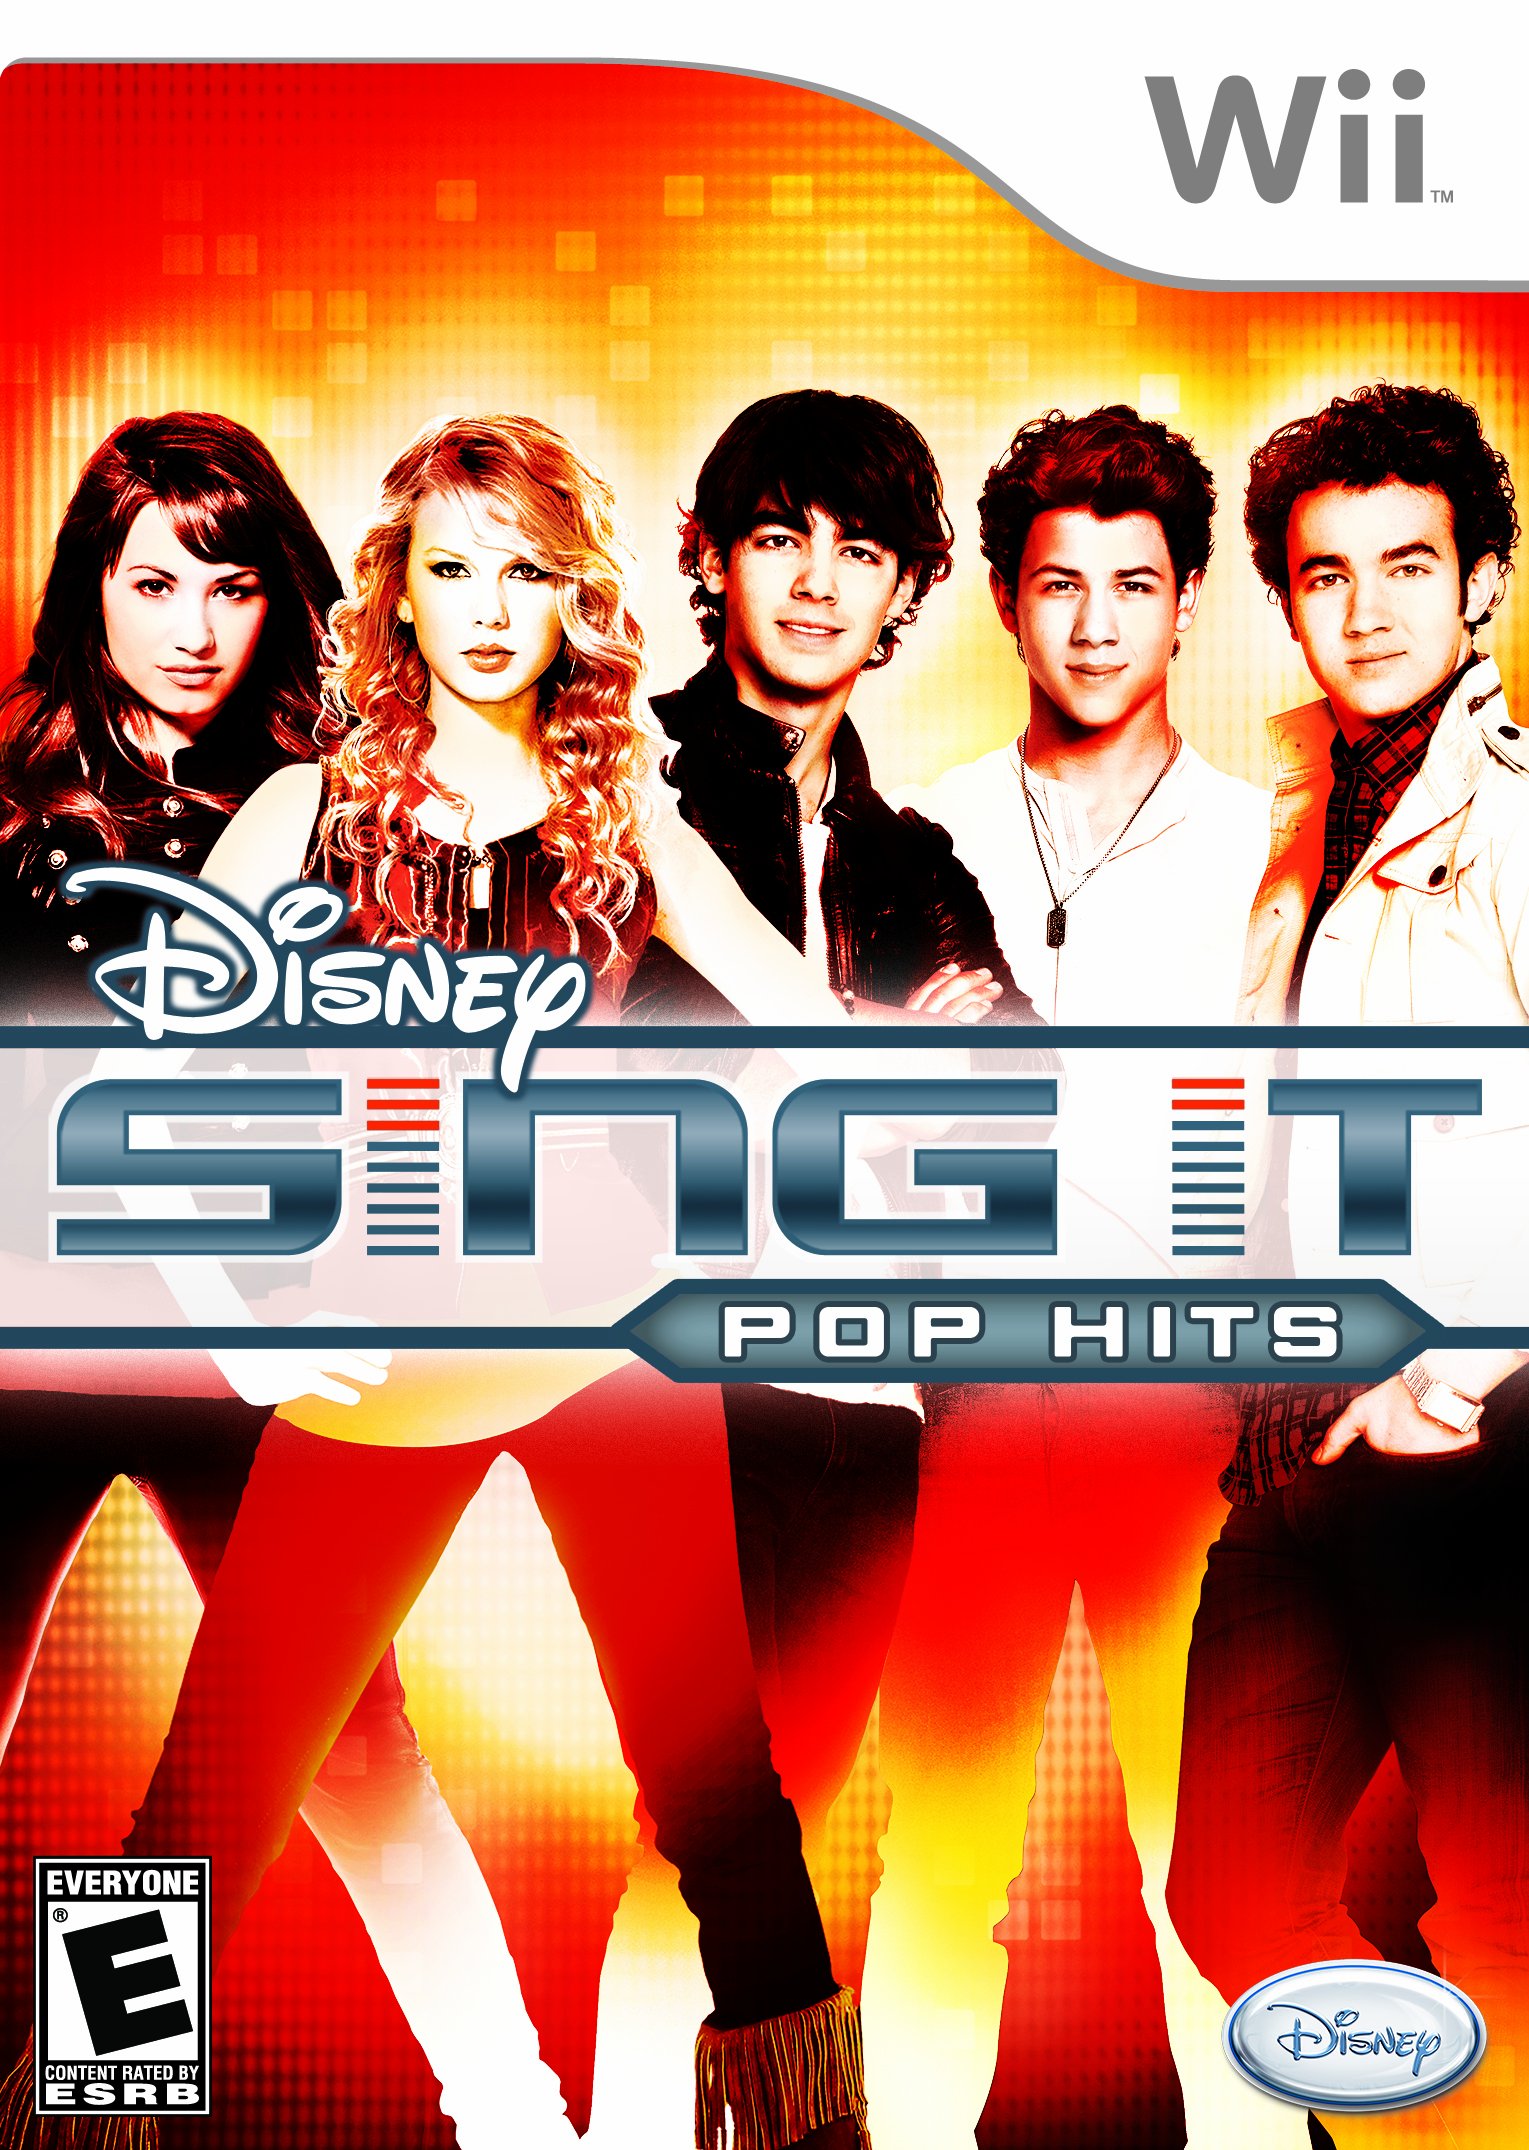 Disney Sing It: Pop Hits Release Date (PS3, Wii)